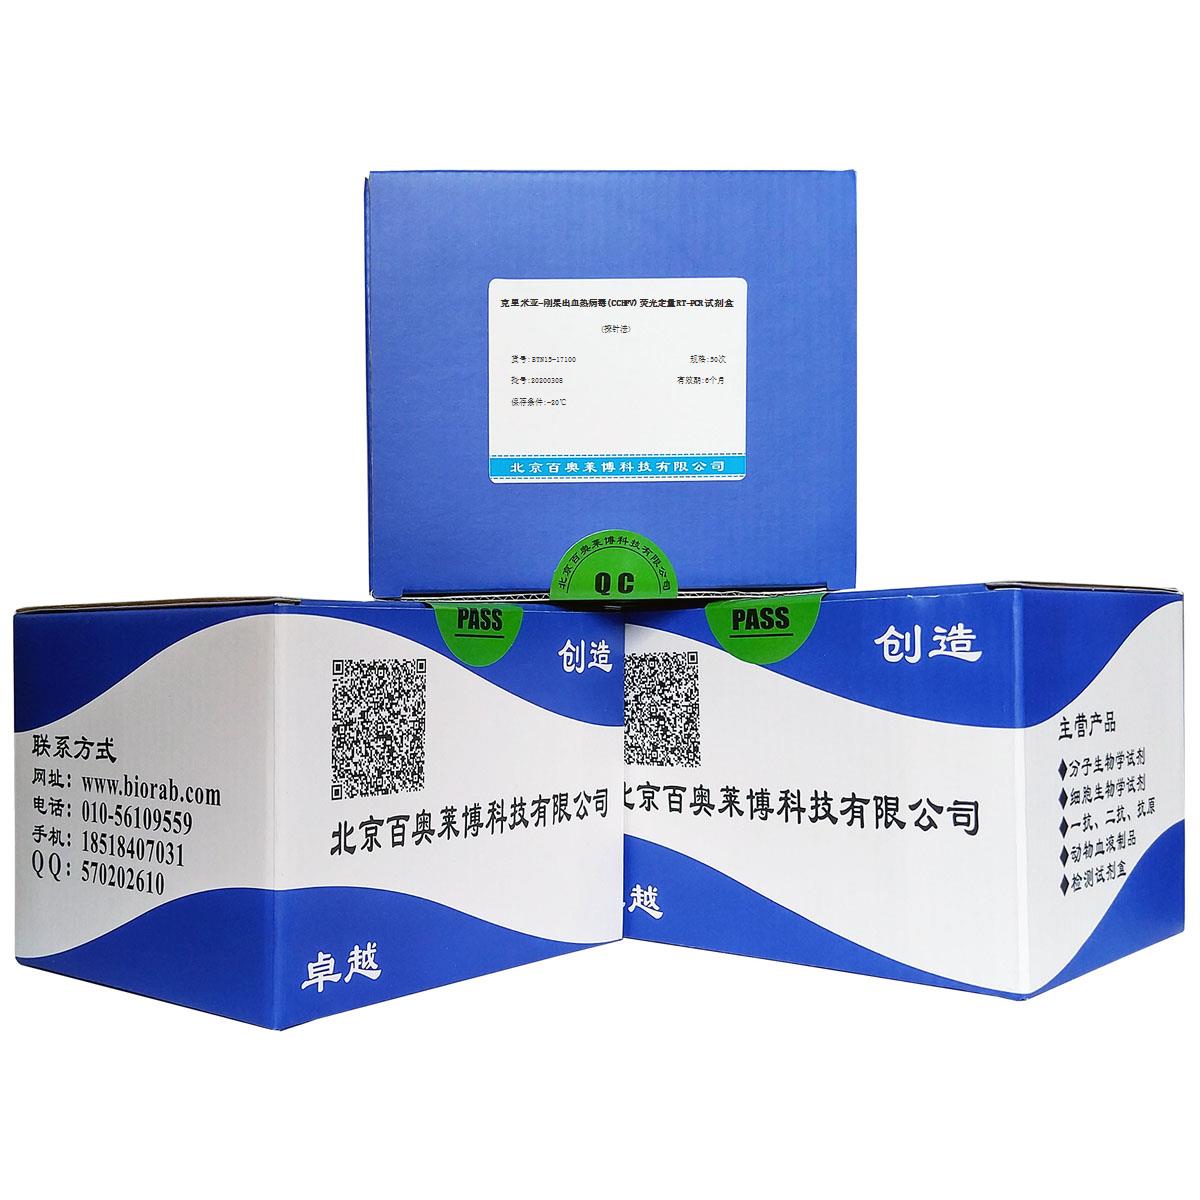 克里米亚-刚果出血热病毒(CCHFV)荧光定量RT-PCR试剂盒(探针法)